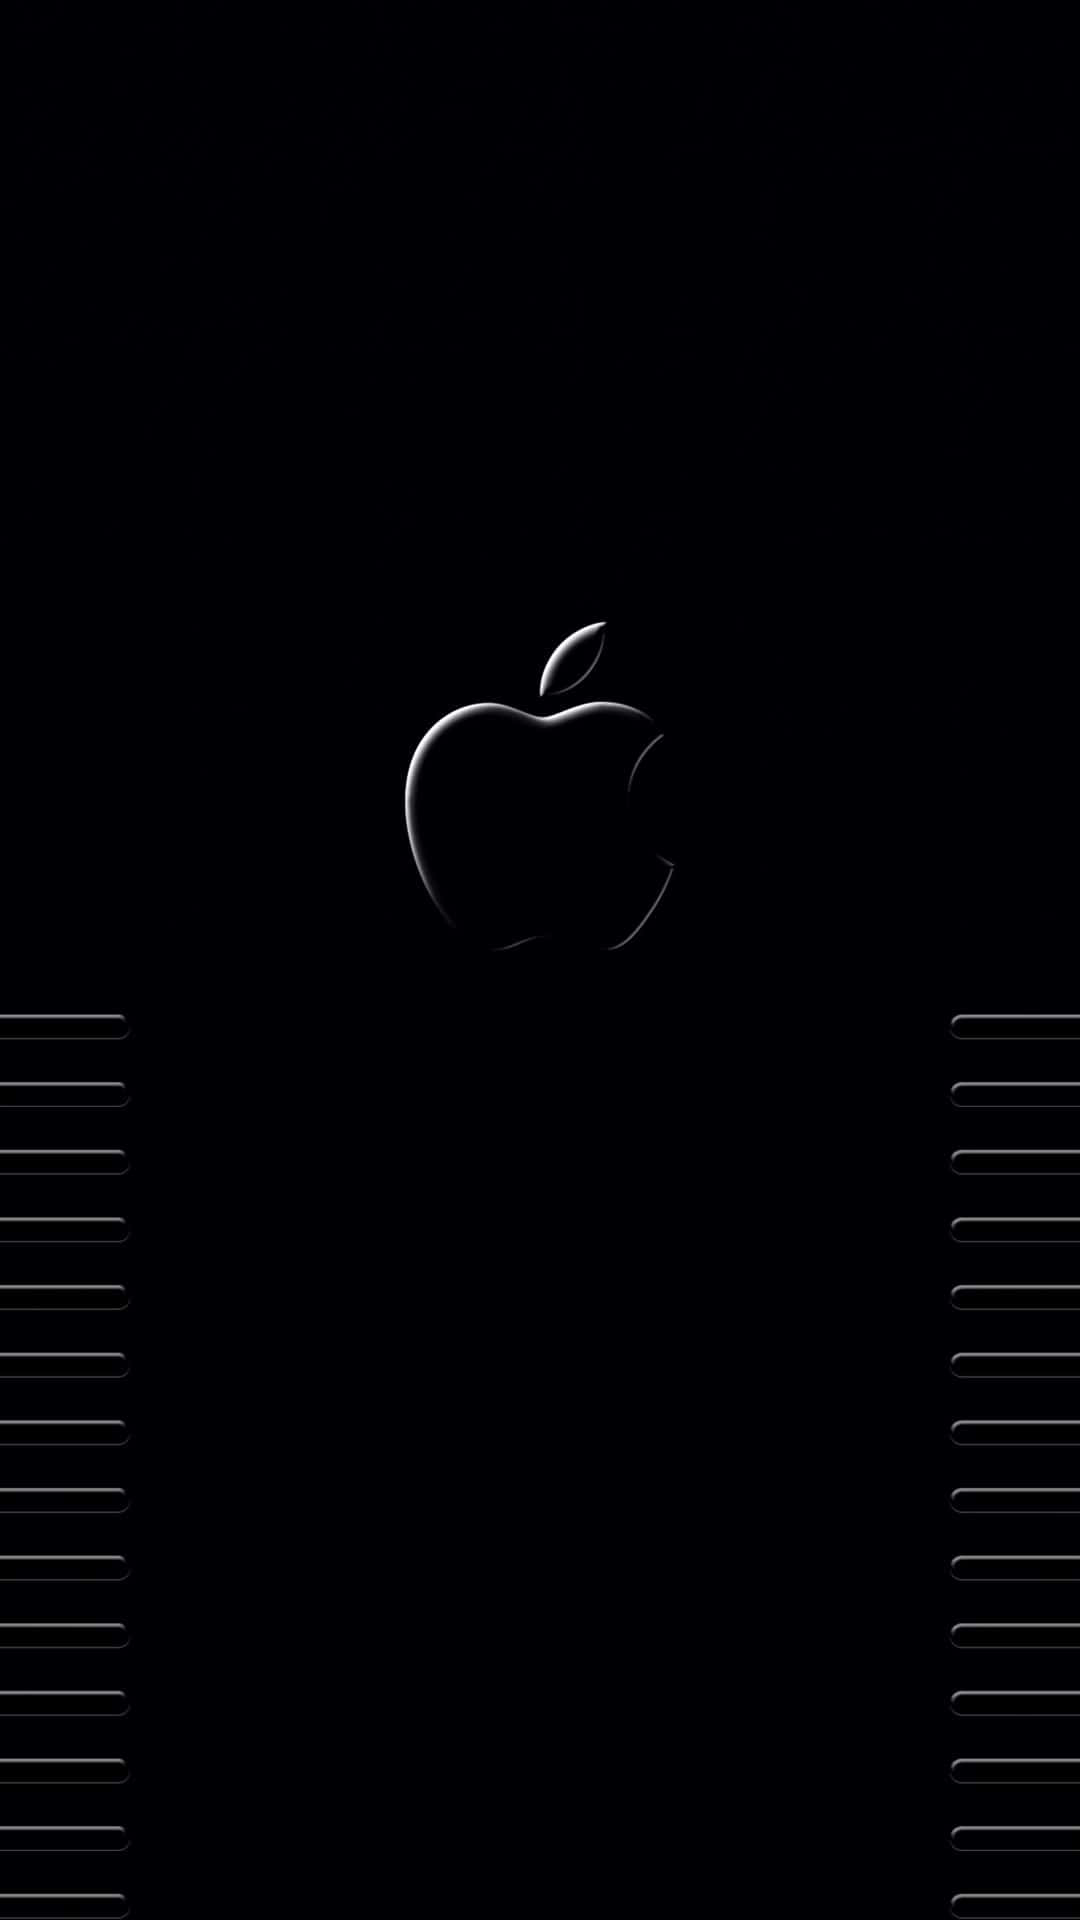 Pixel3 Fondo Oscuro De Estética Con El Logotipo De Apple